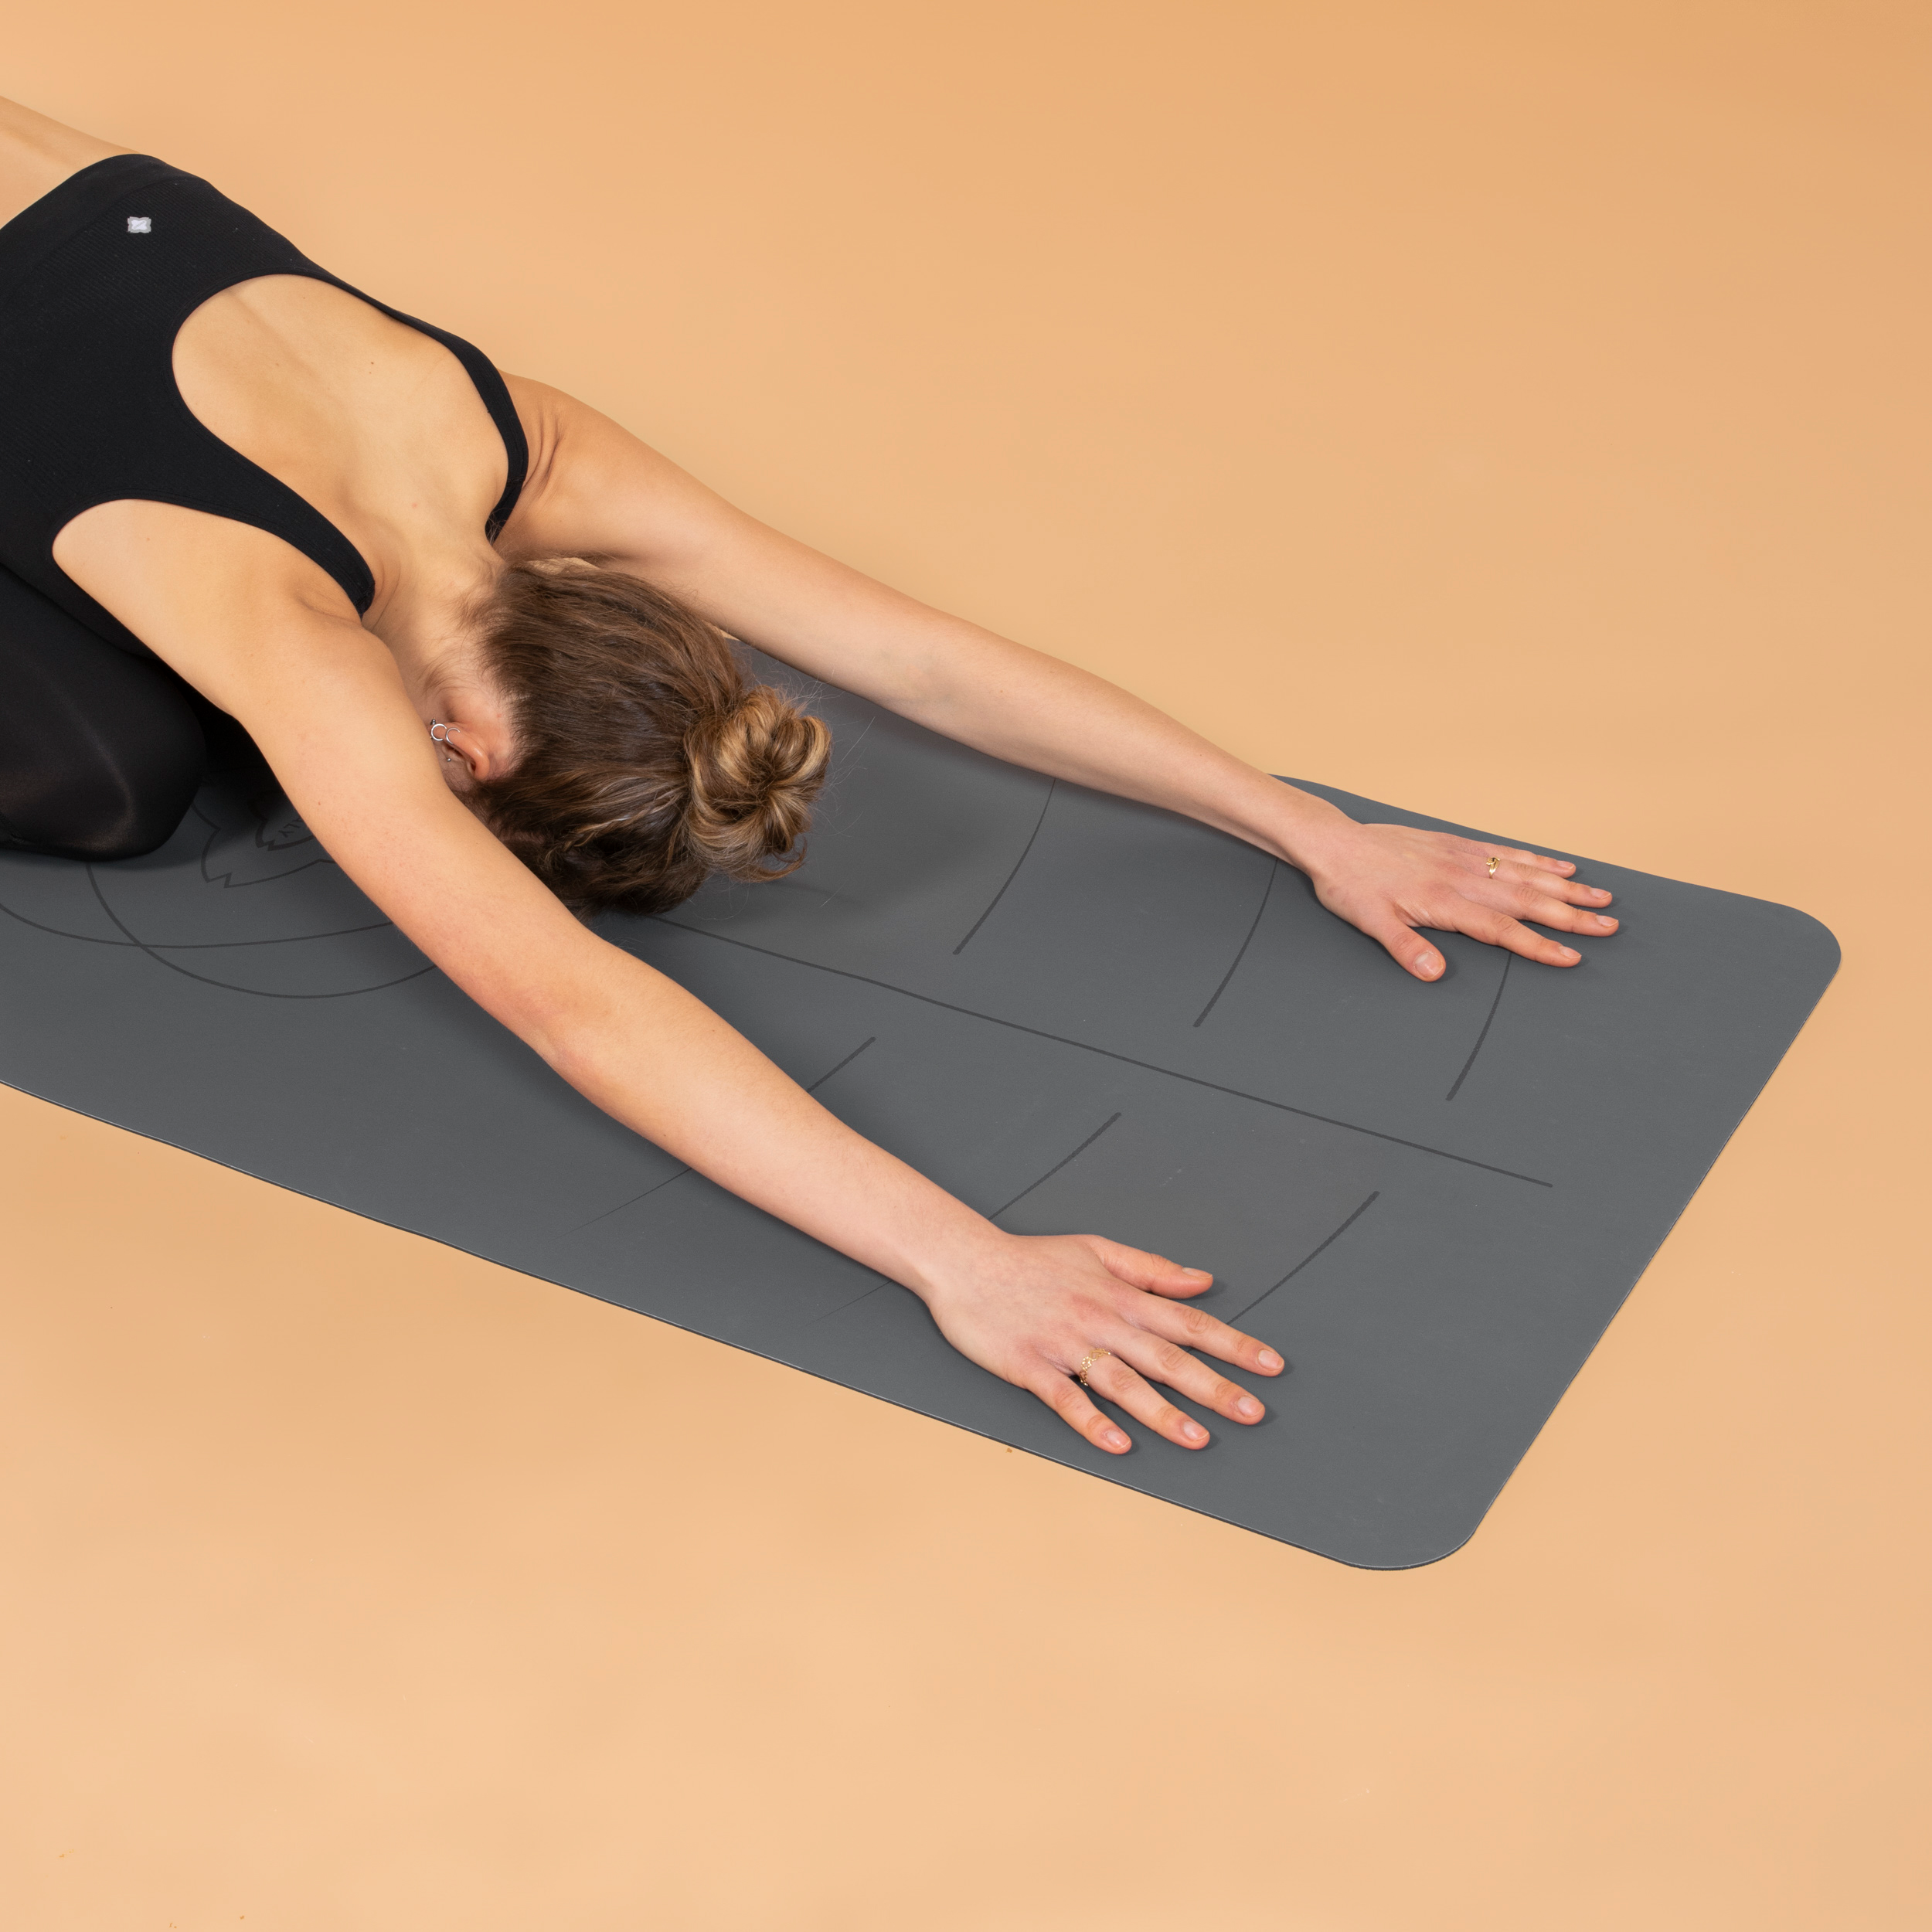 Tapis de yoga : comment choisir le modèle le plus adapté ?